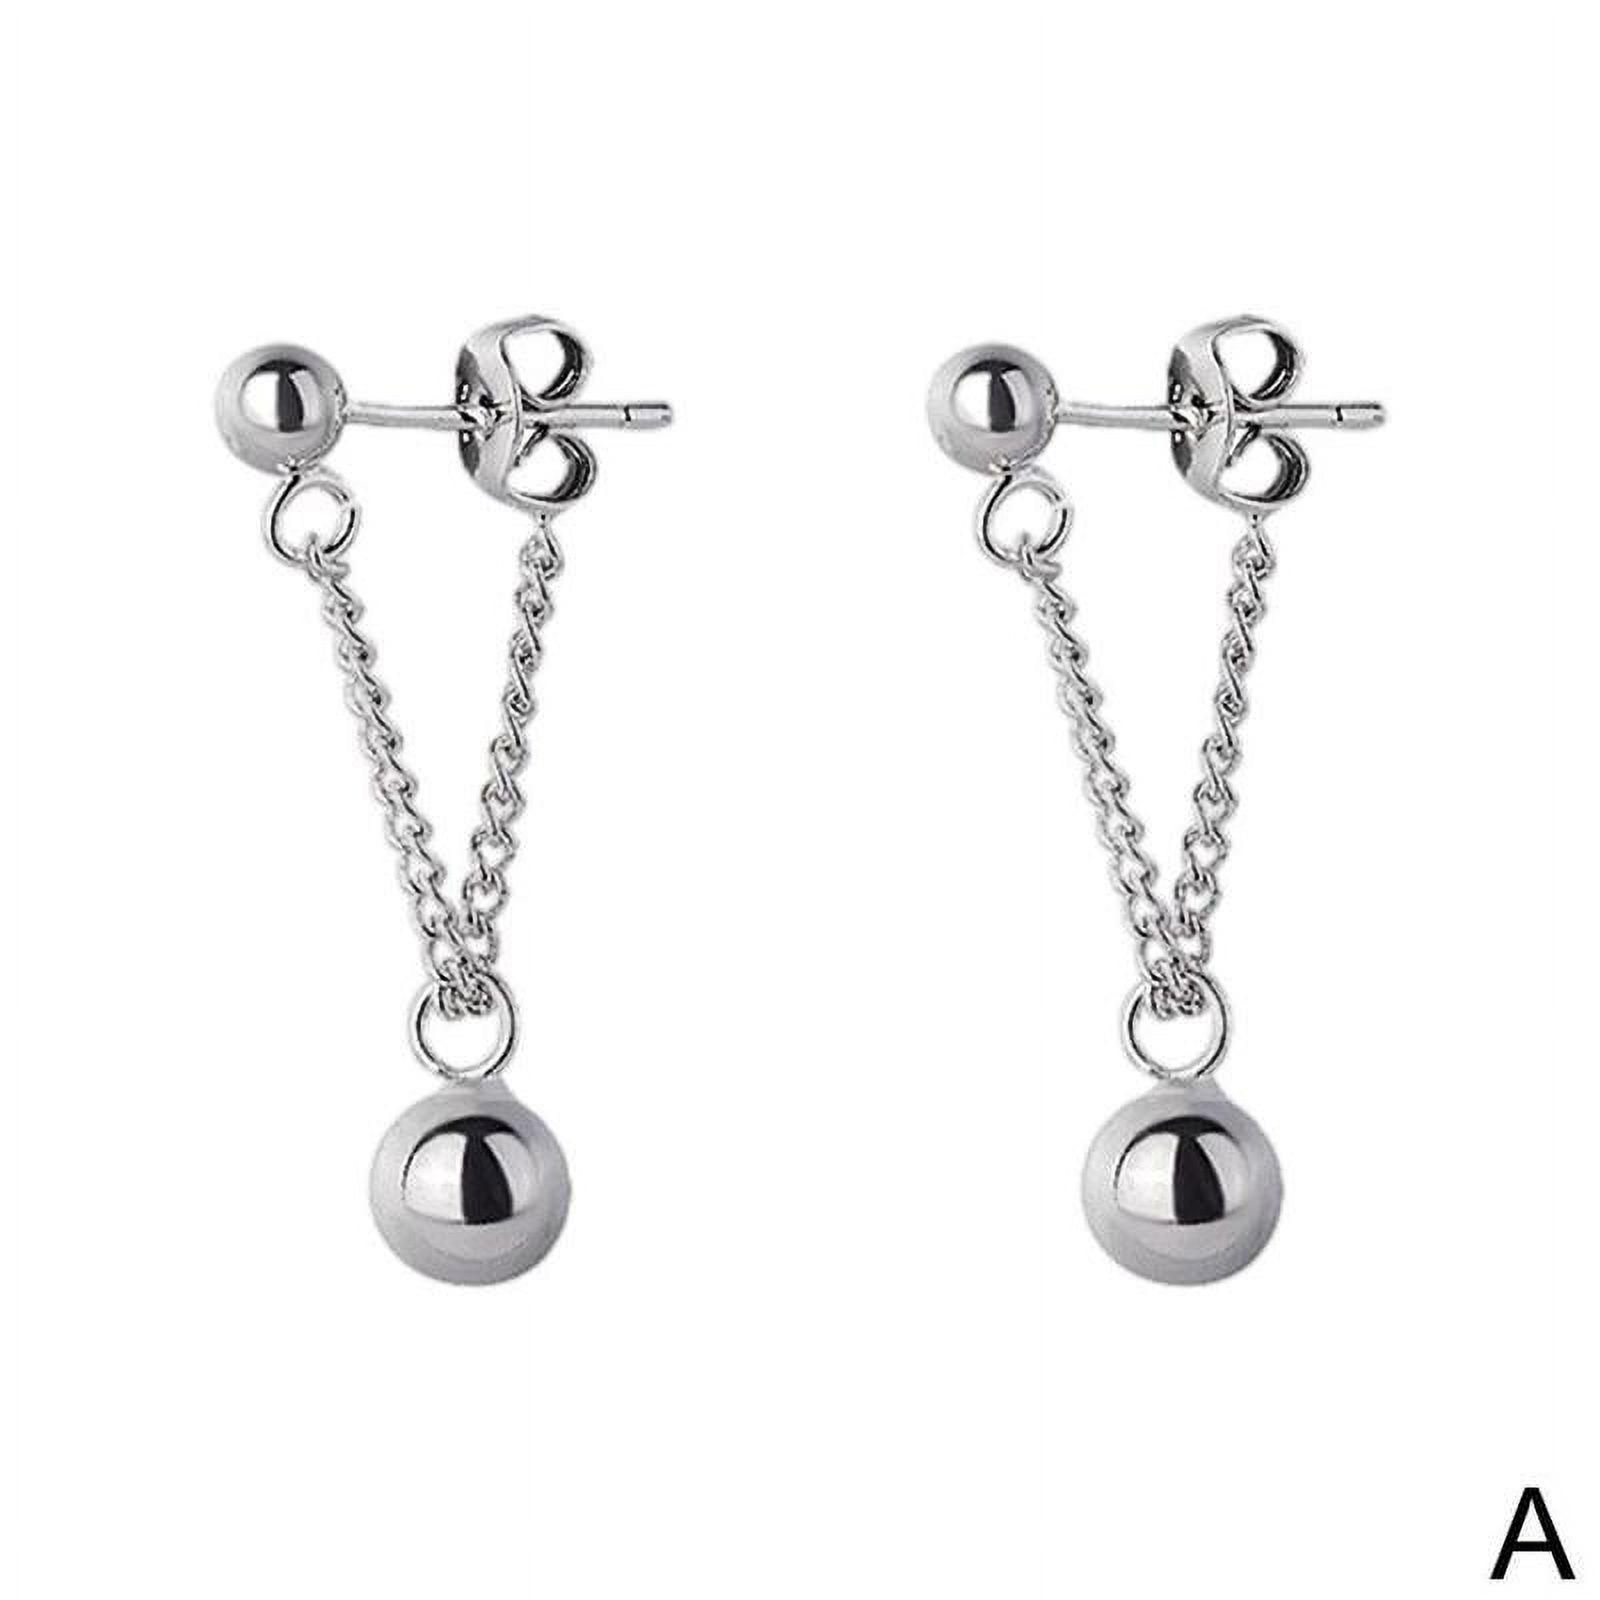 Silver Earrings Triangle Chain Drop Stud Earrings Women Butterfly Heart Star Crystal Dangle Earrings Studs Metal Chain Bead Earrings Jewelry Gifts Q3C6 - image 1 of 9